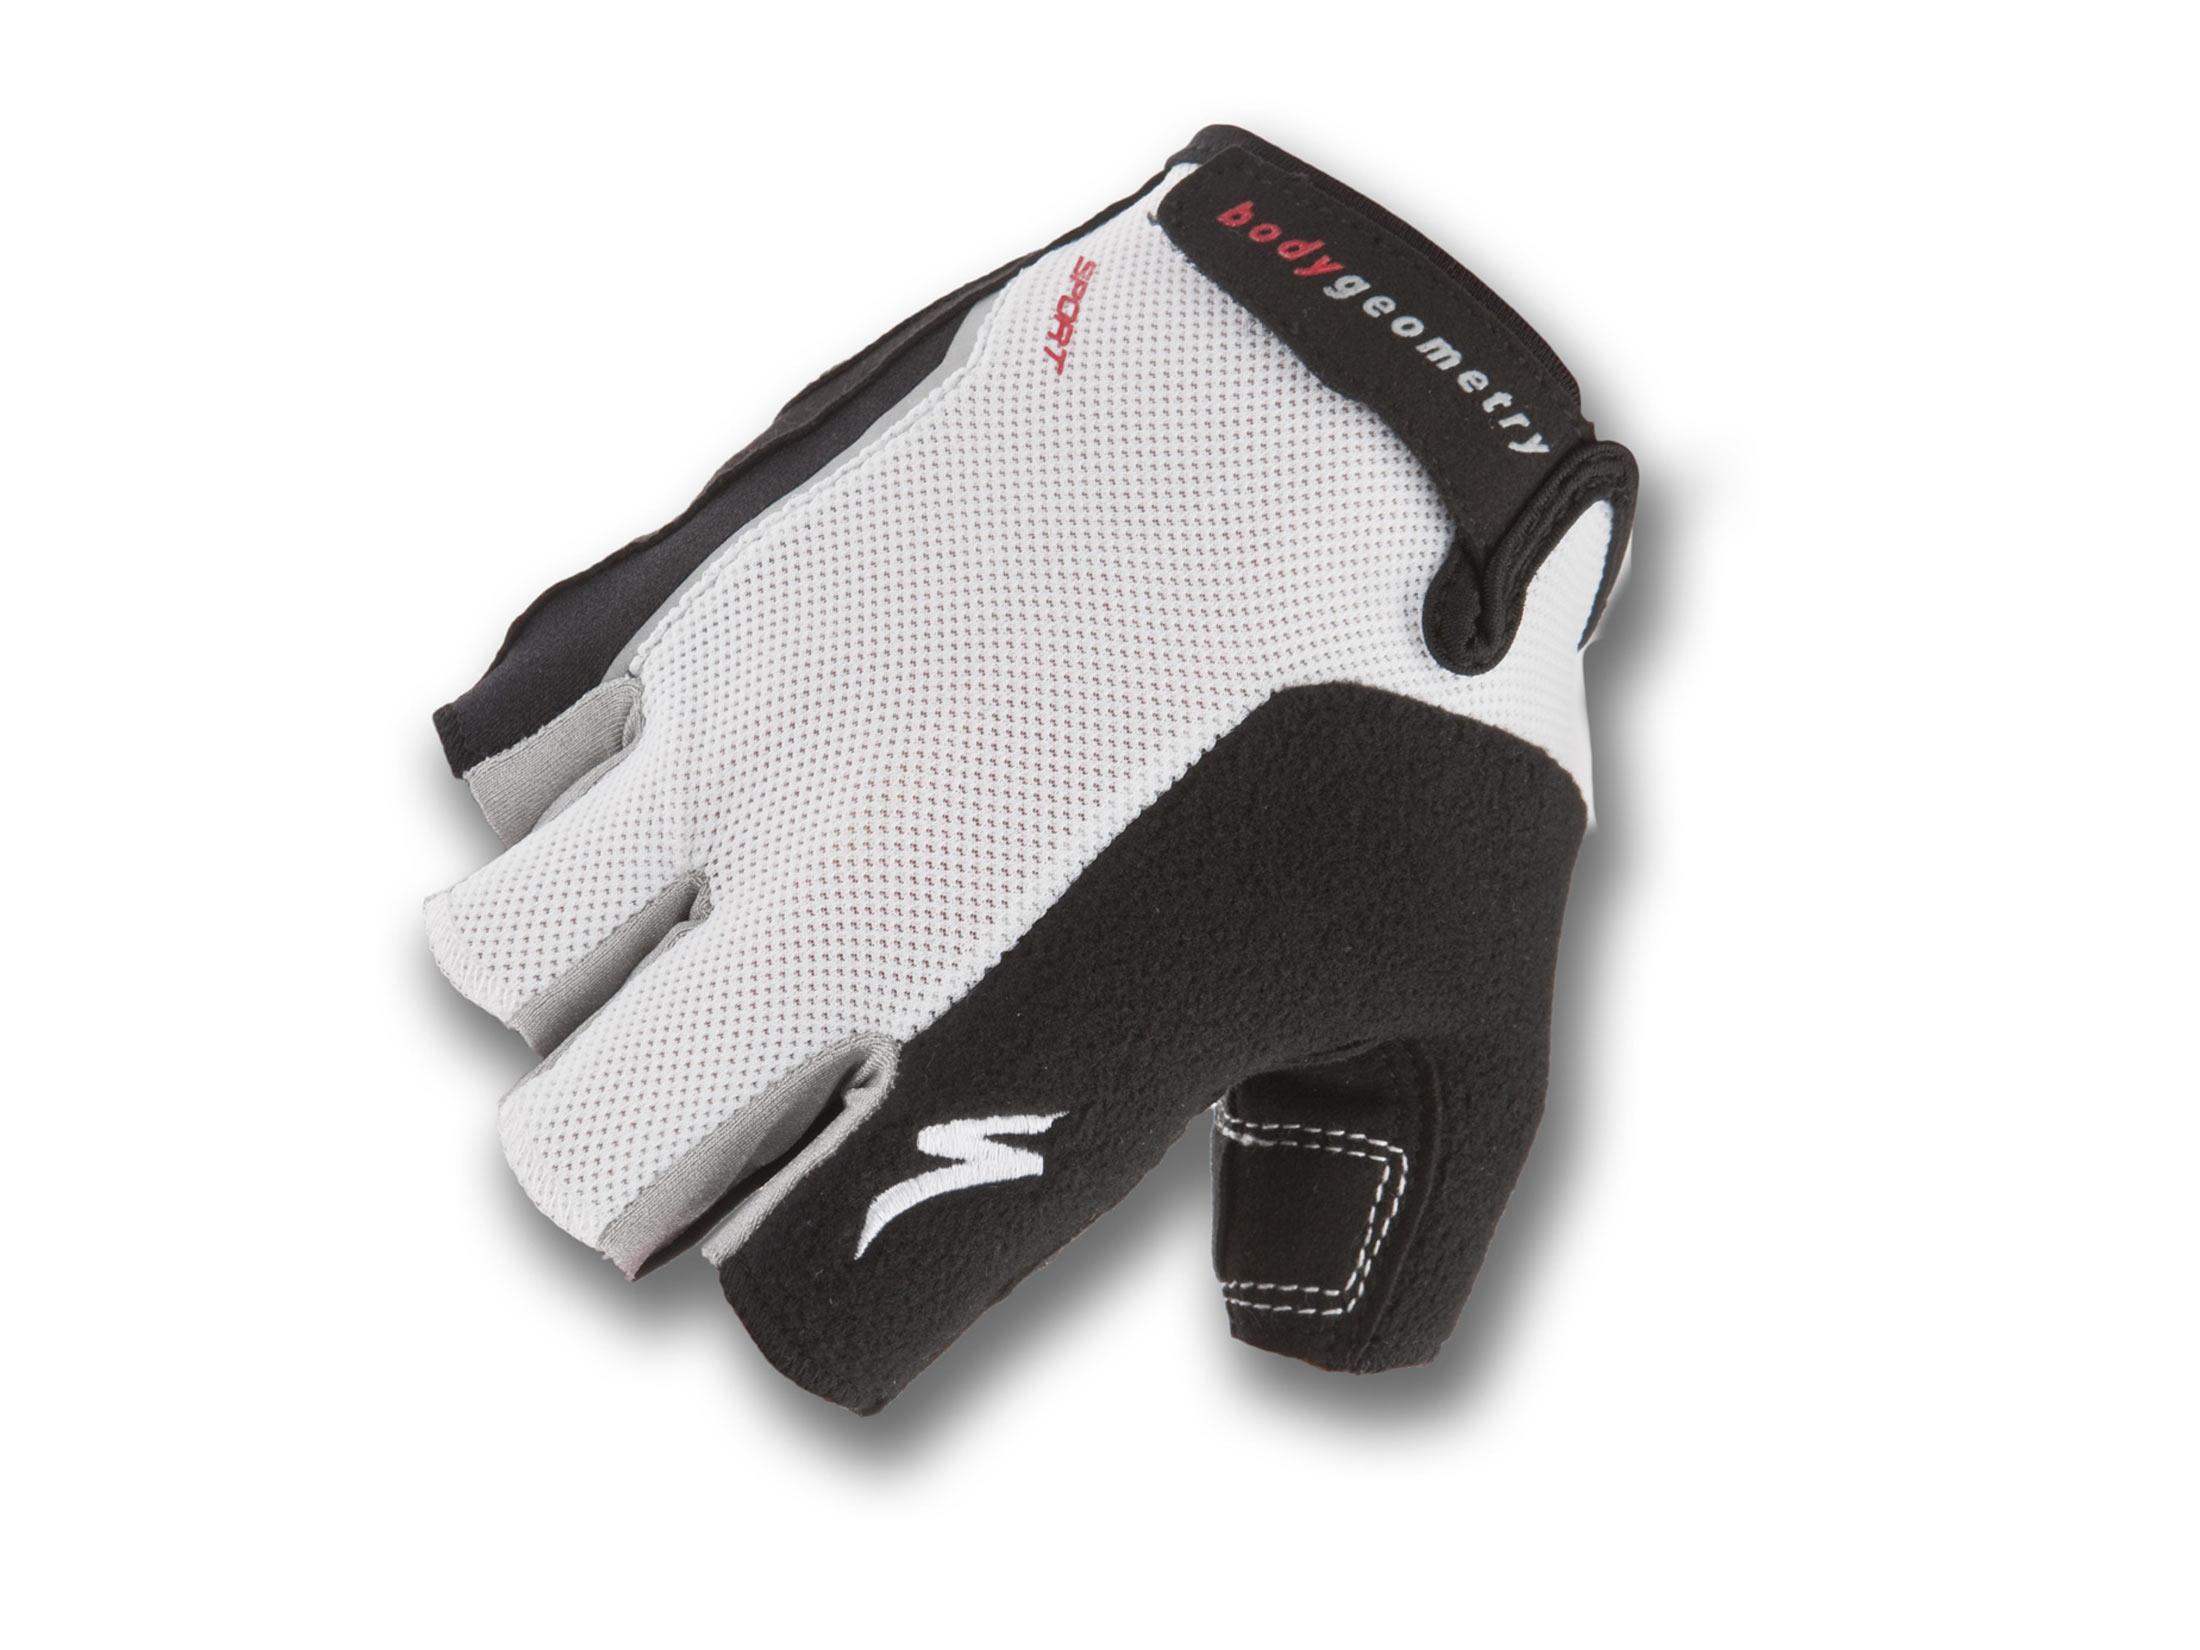 Γάντια Specialized BG Sport - Μαύρο/Λευκό (Μ)